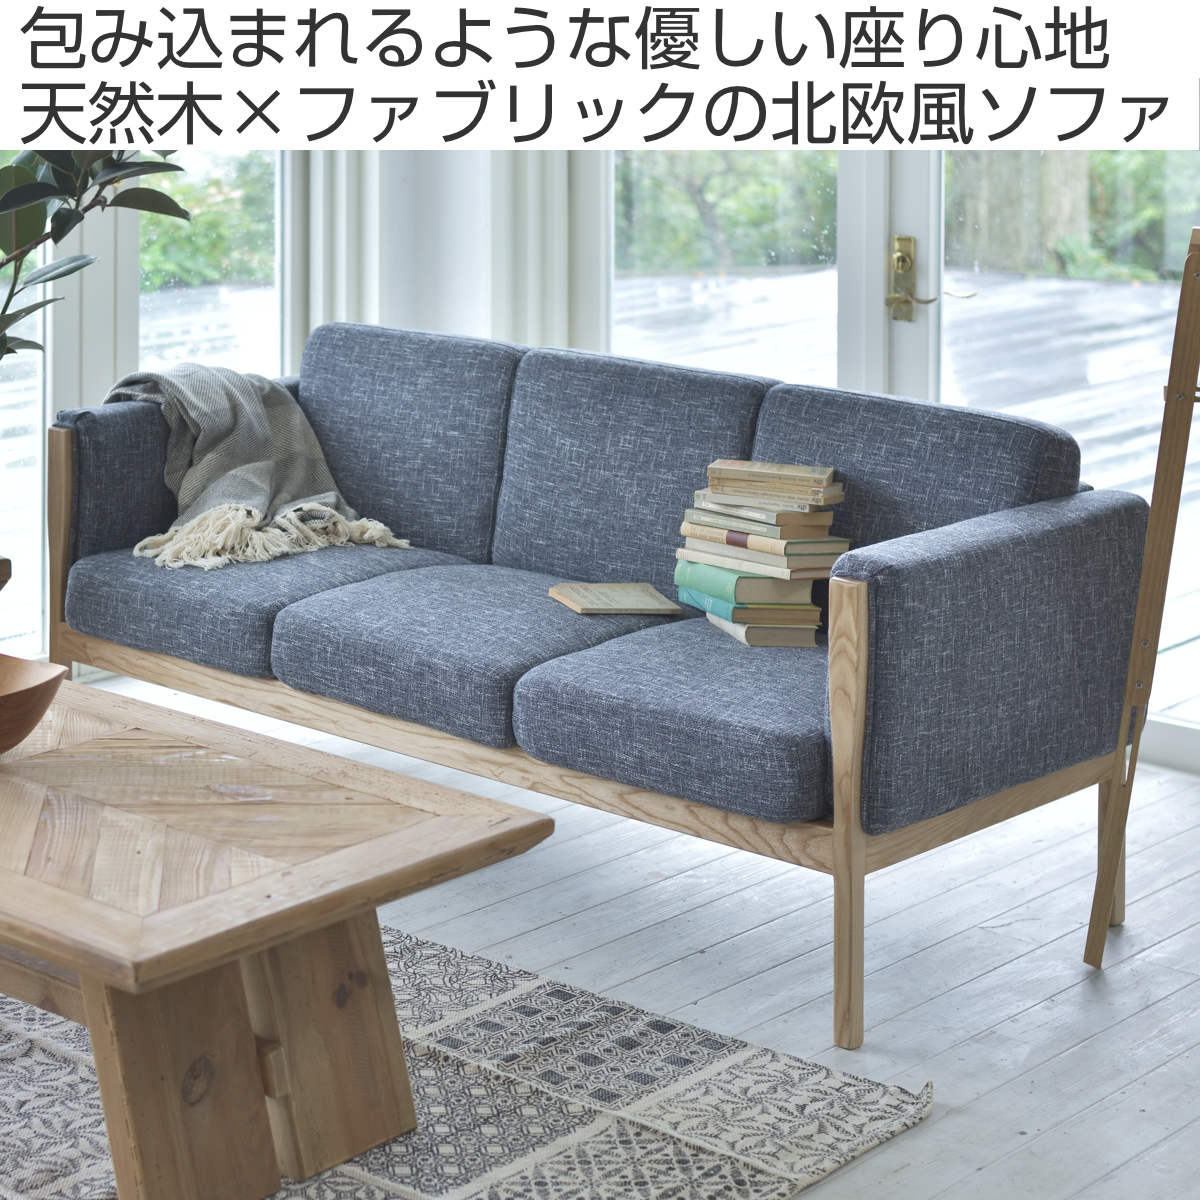 【売り人気】おしゃれ ベッド ソファ sofa 木製フレーム 2人掛けソファー ファブリック 送料無料 カーニー ピンク ブラウン 布製